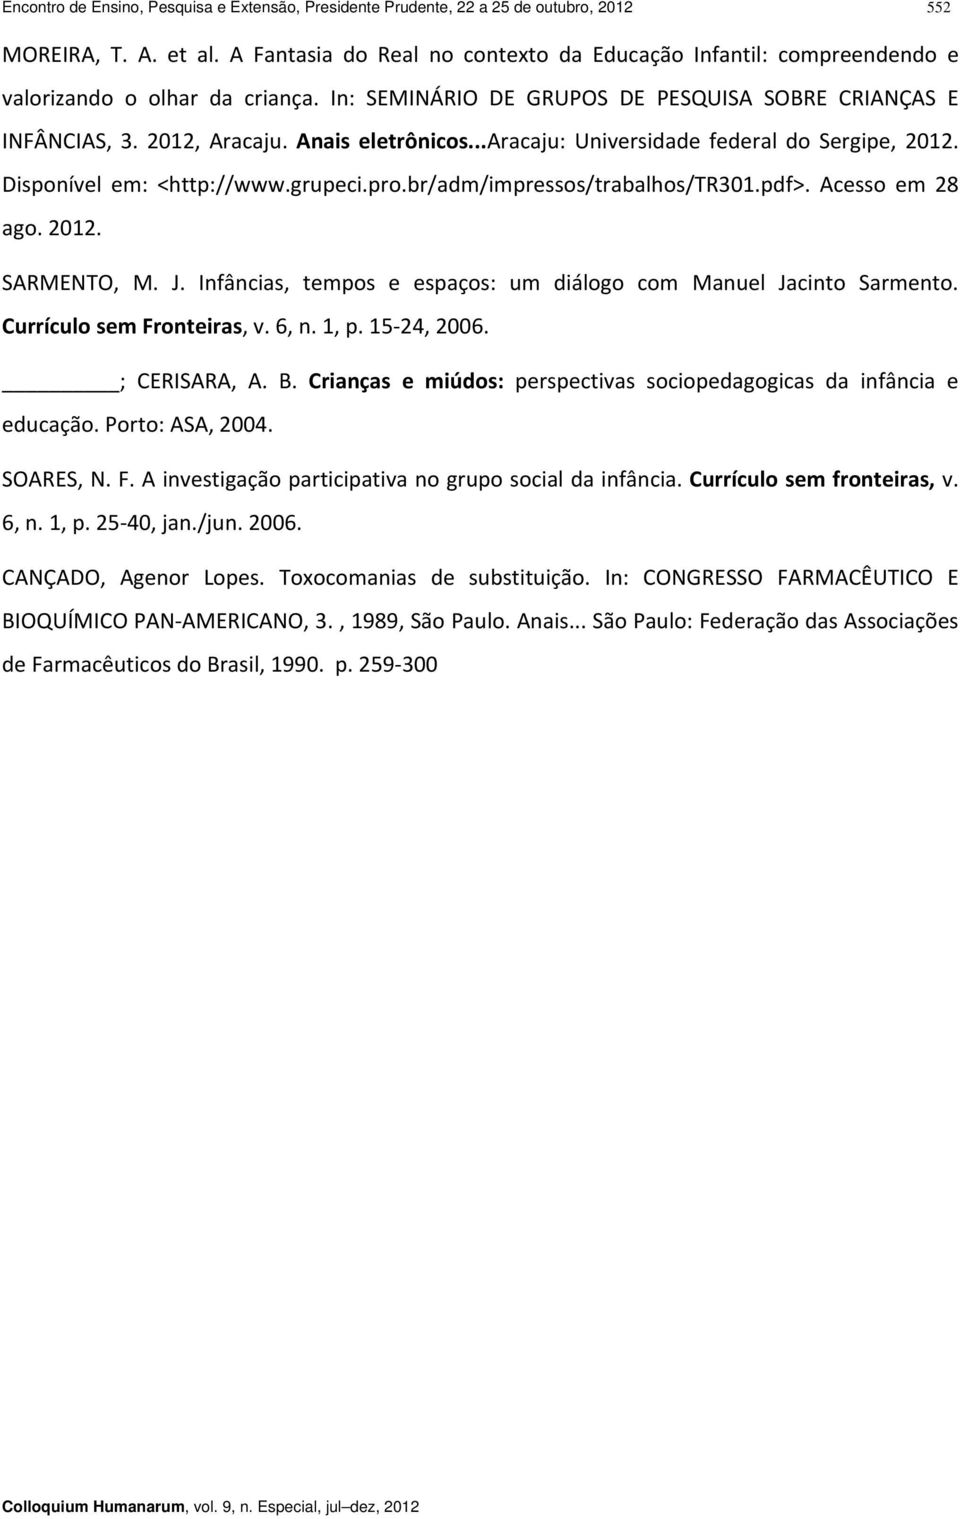 Anais eletrônicos...aracaju: Universidade federal do Sergipe, 2012. Disponível em: <http://www.grupeci.pro.br/adm/impressos/trabalhos/tr301.pdf>. Acesso em 28 ago. 2012. SARMENTO, M. J.